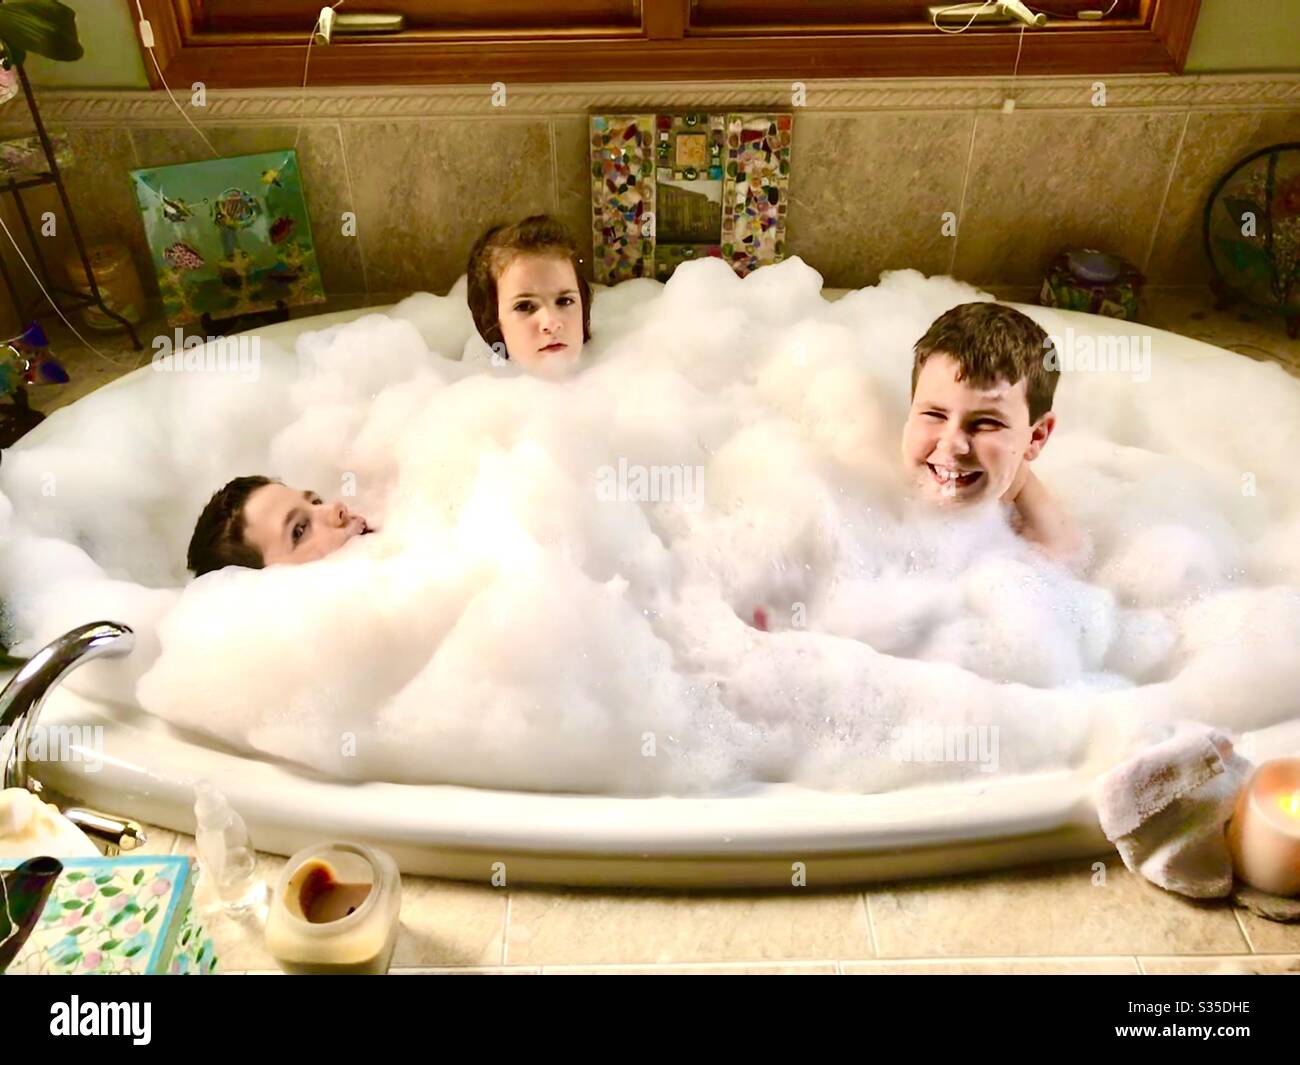 Three kids in a bubble bath Stock Photo